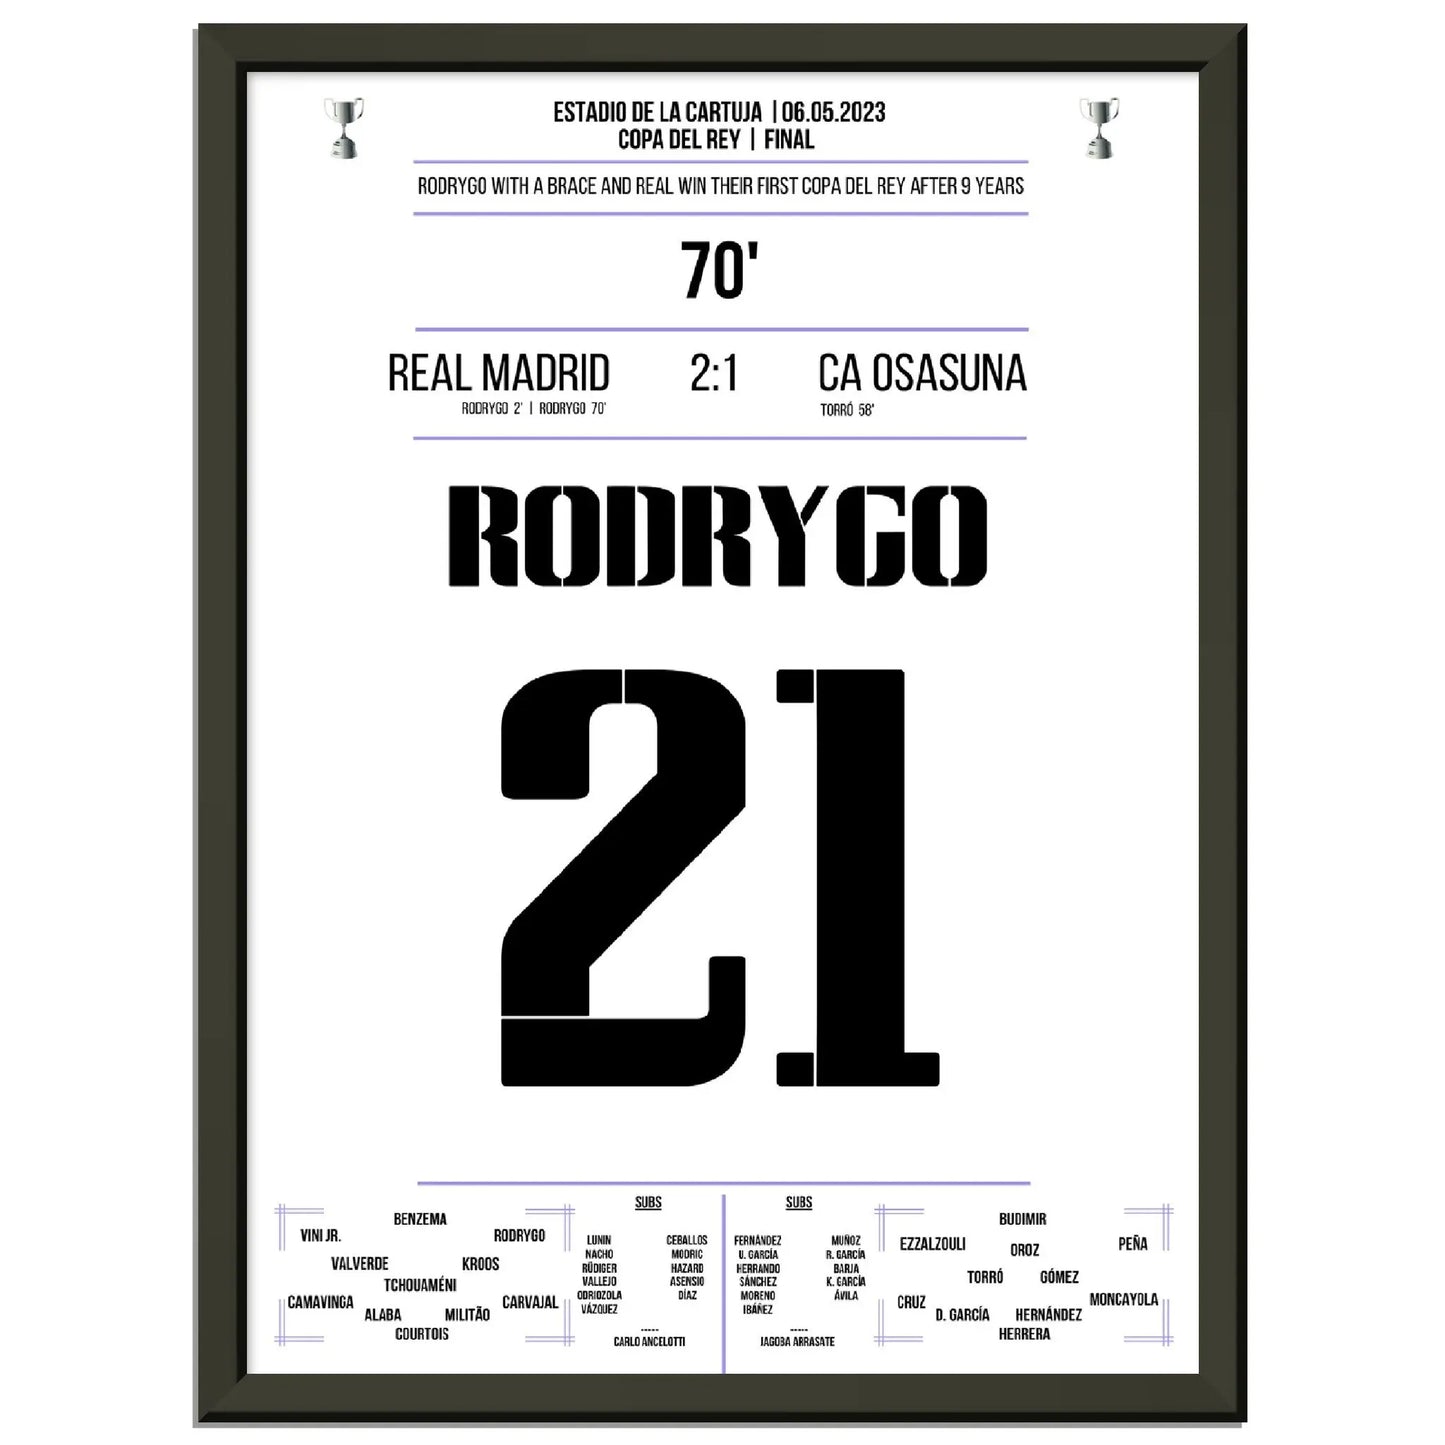 Matchwinner Rodrygo zum ersten Copa Del Rey Sieg nach 9 Jahren 